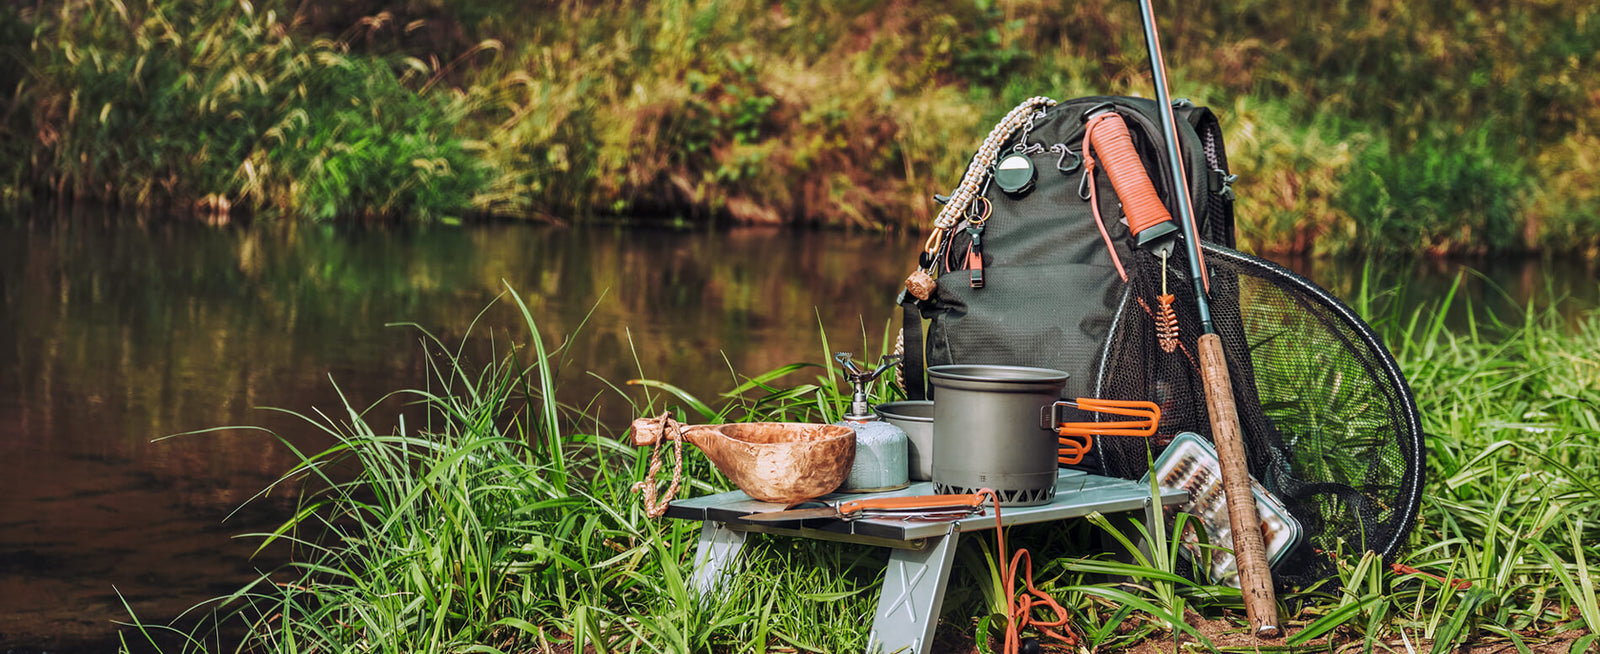 Orvis Waterproof Backpack - Rucksack Fishing Bags Luggage